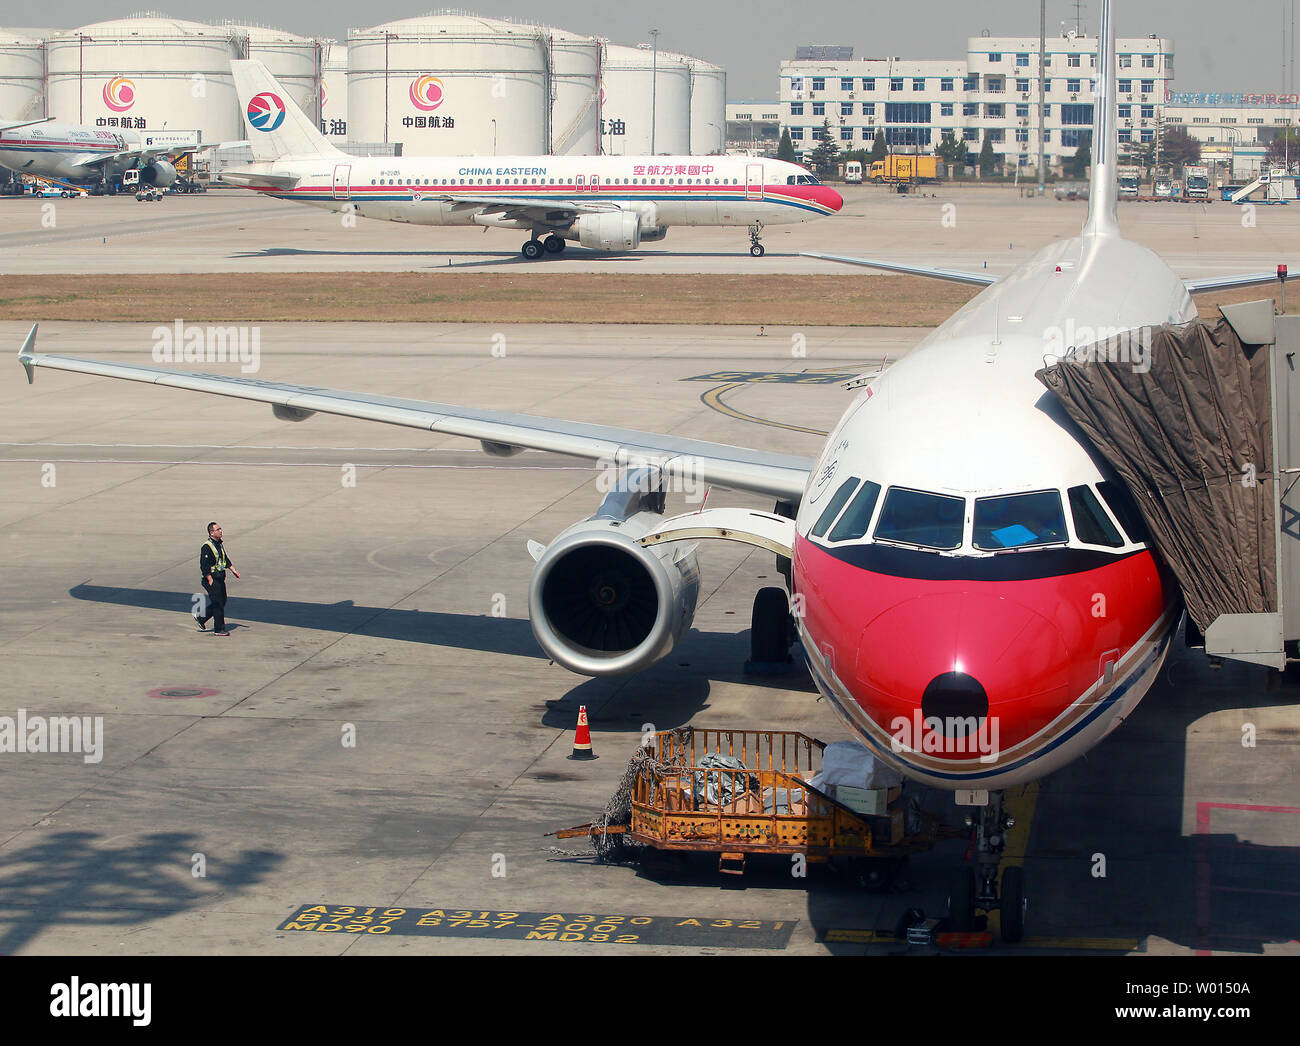 Un aereo di linea di passeggeri arriva a Pechino aeroporto internazionale il 4 aprile 2014. La Cina è emerso come il secondo più grande mercato di aviazione. A causa di anno in anno una crescita straordinaria, vi è stato un notevole aumento della domanda di velivoli commerciali dai cinesi per le compagnie aeree. UPI/Stephen rasoio Foto Stock